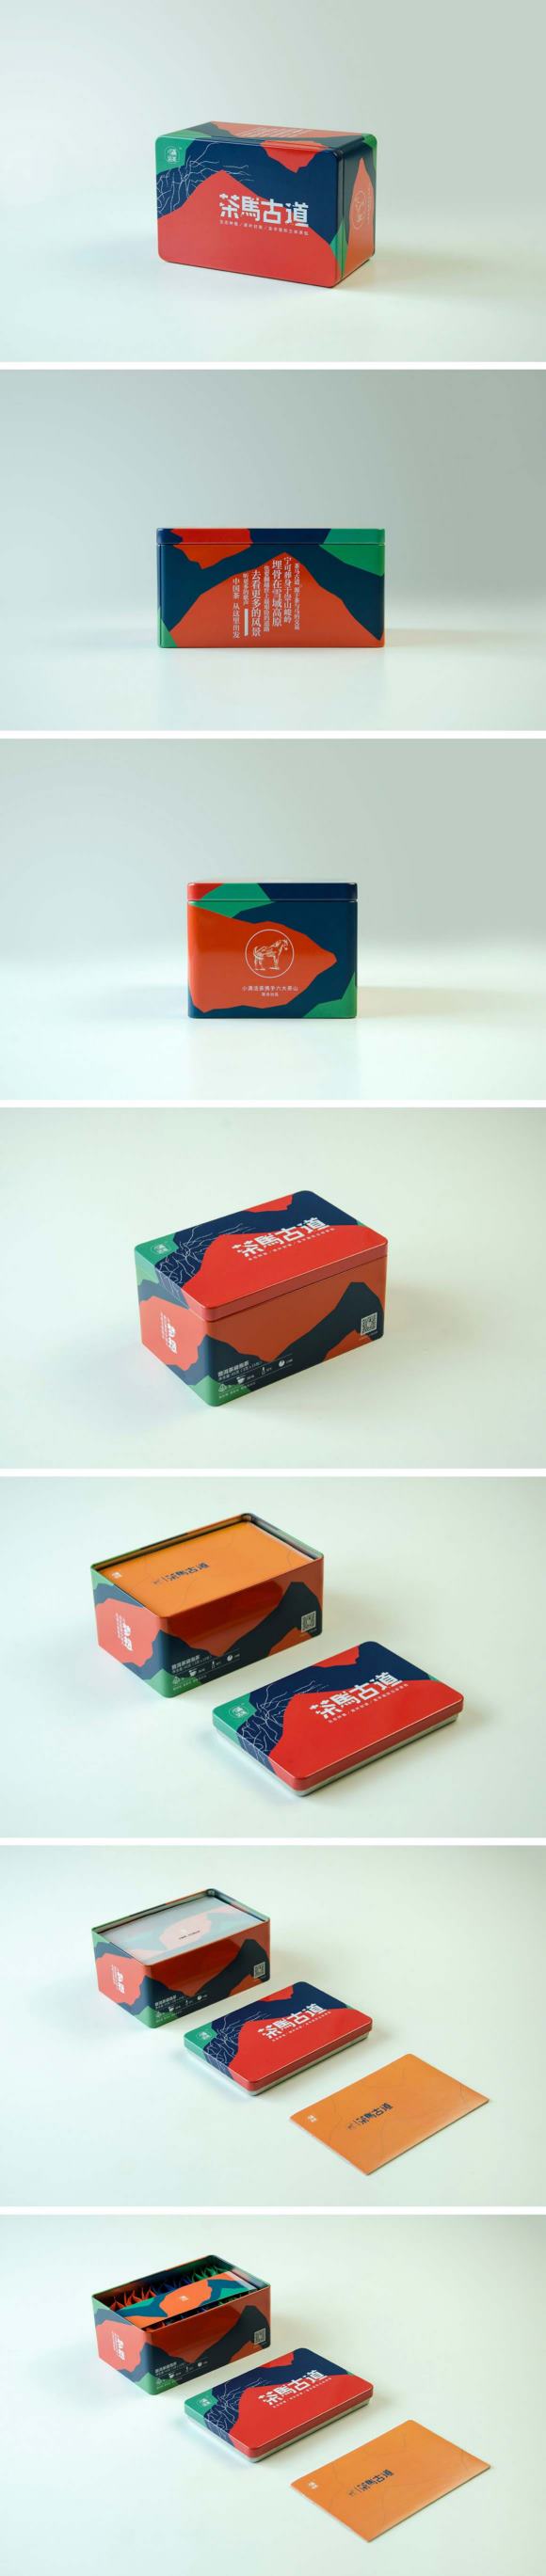 无线袋泡茶包装盒设计 